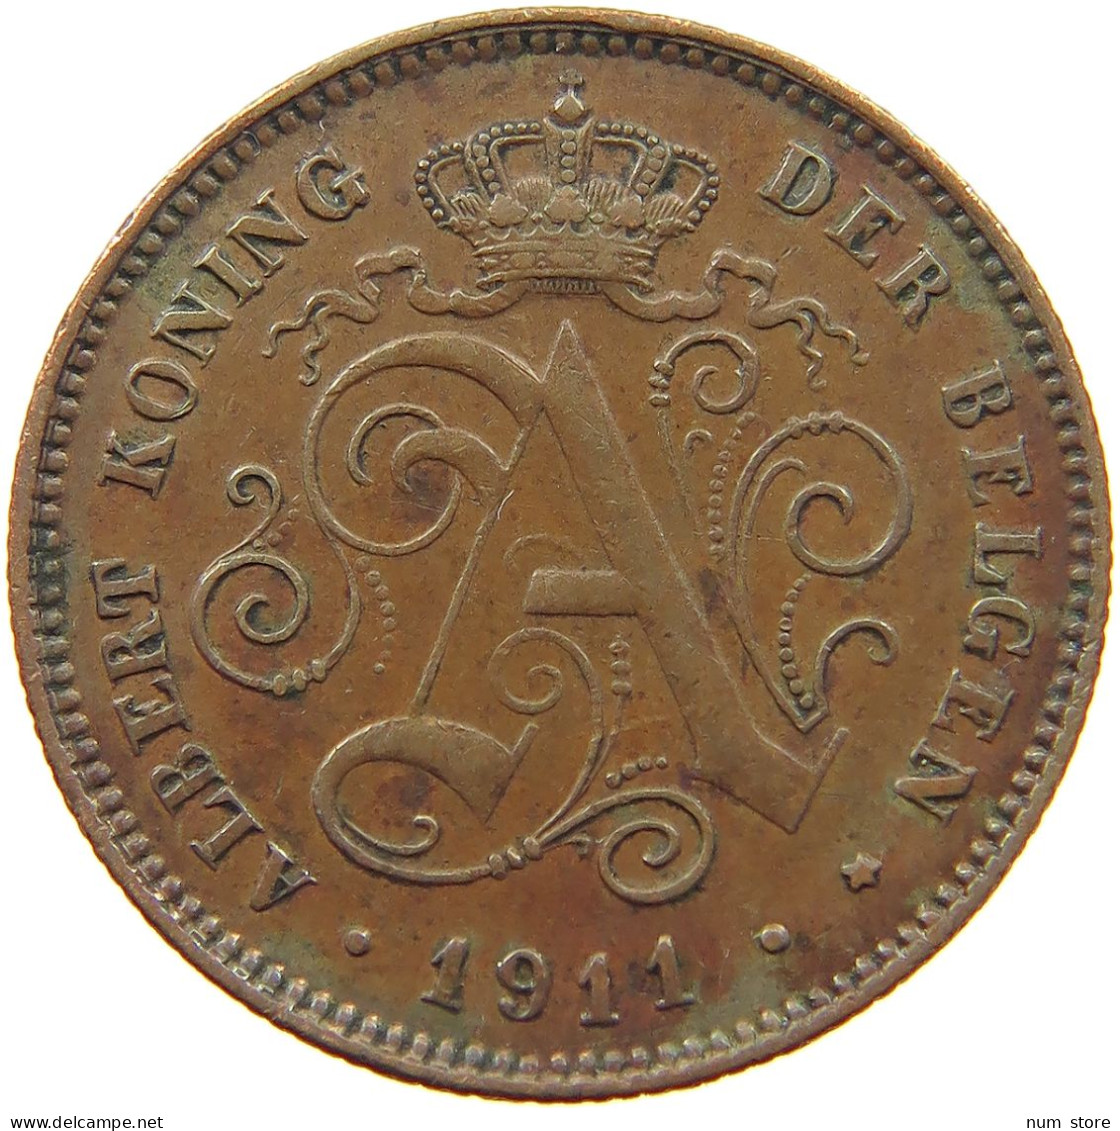 BELGIUM 2 CENTIMES 1911 #a013 0575 - 2 Cents